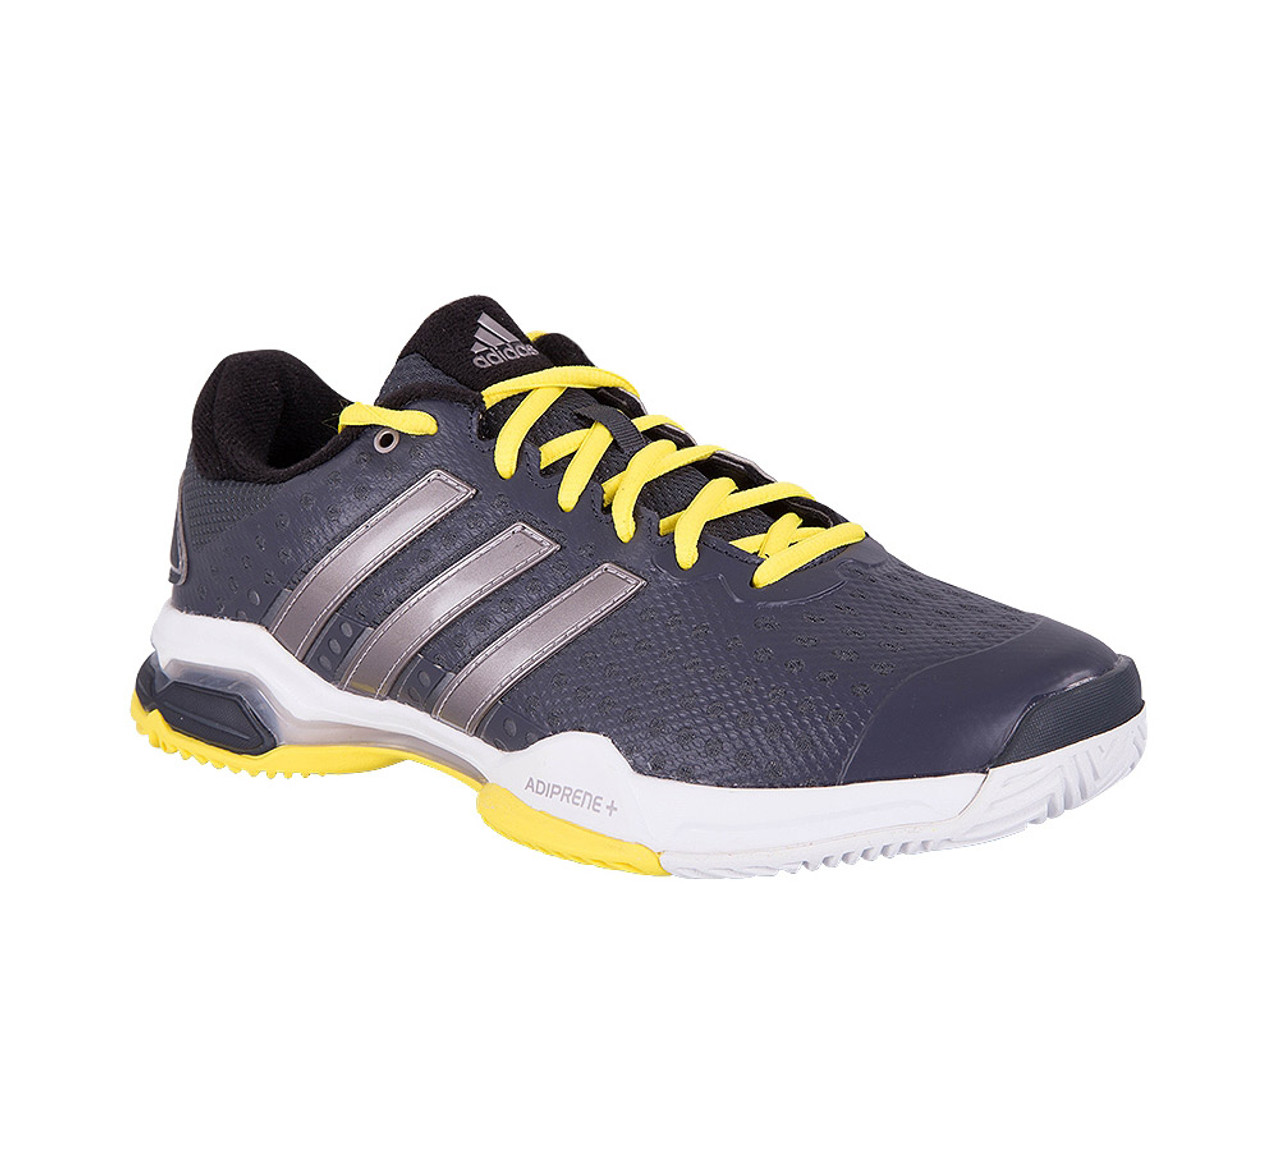 Adidas Men's Barricade Team 4 Tennis Shoe Grey | Discount Adidas Men's Athletic Shoes & More - Shoolu.com | Shoolu.com